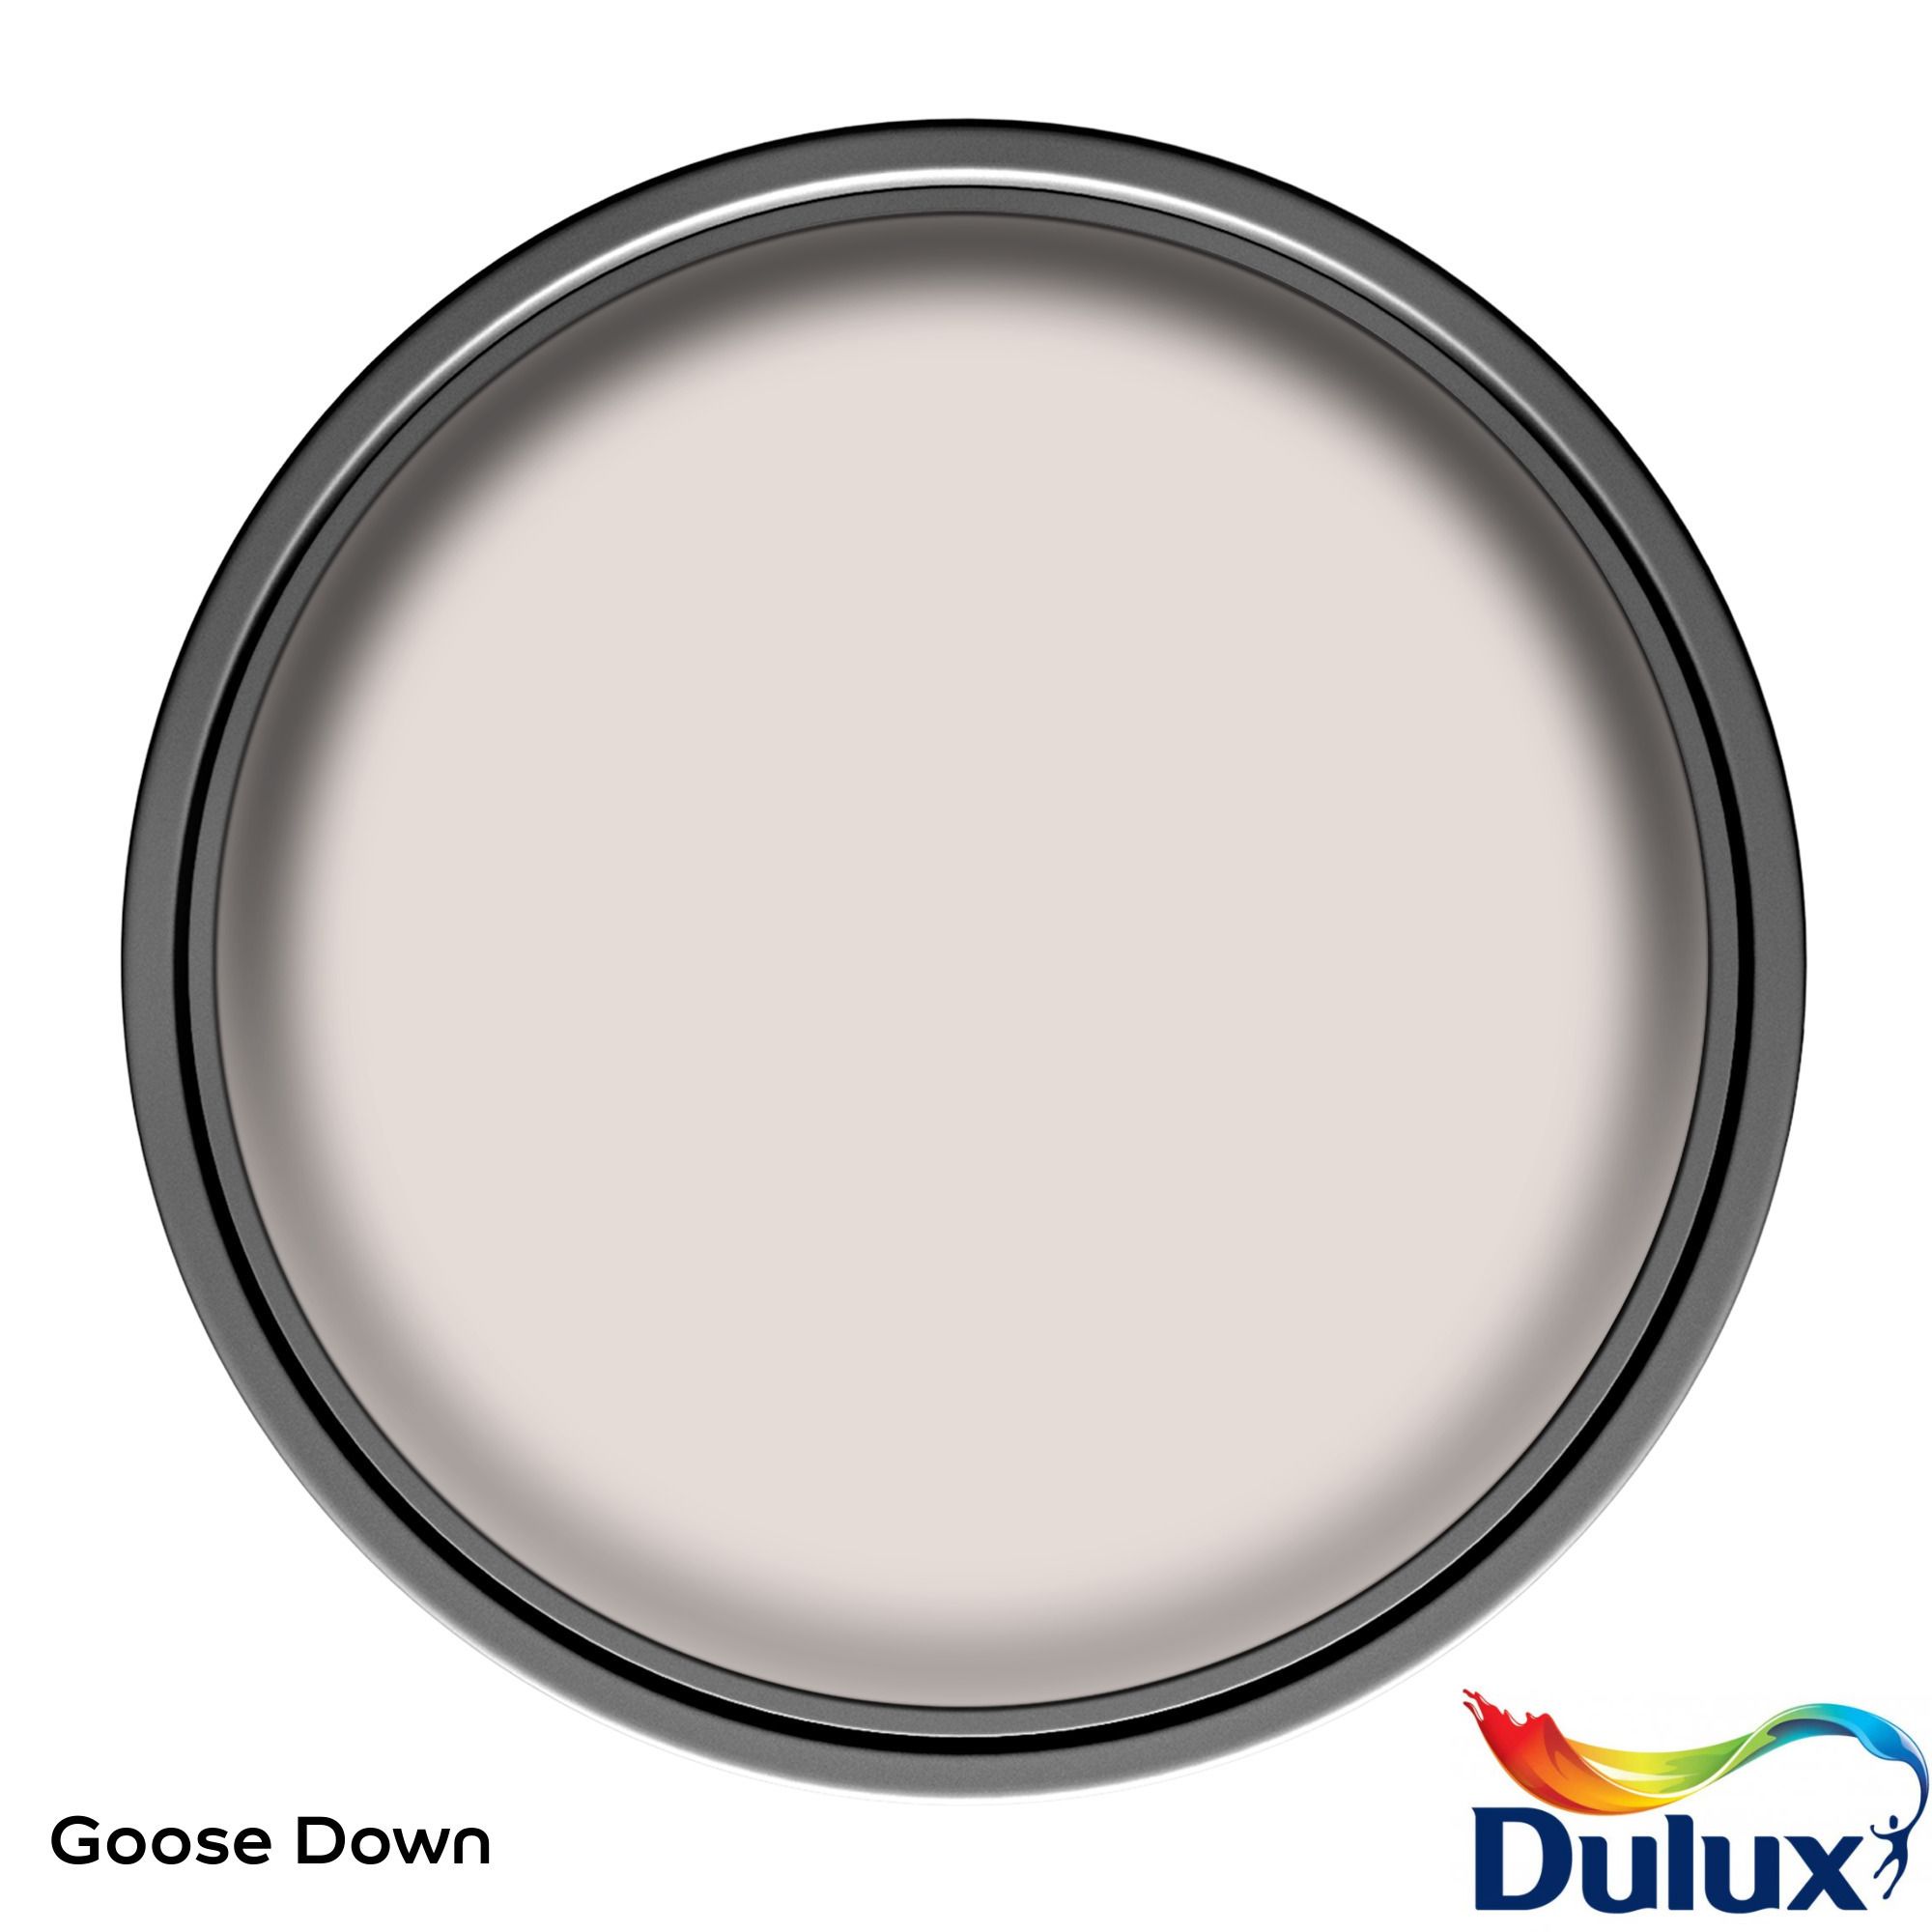 Dulux Easycare Kitchen Goose Down Matt Wall paint, 2.5L